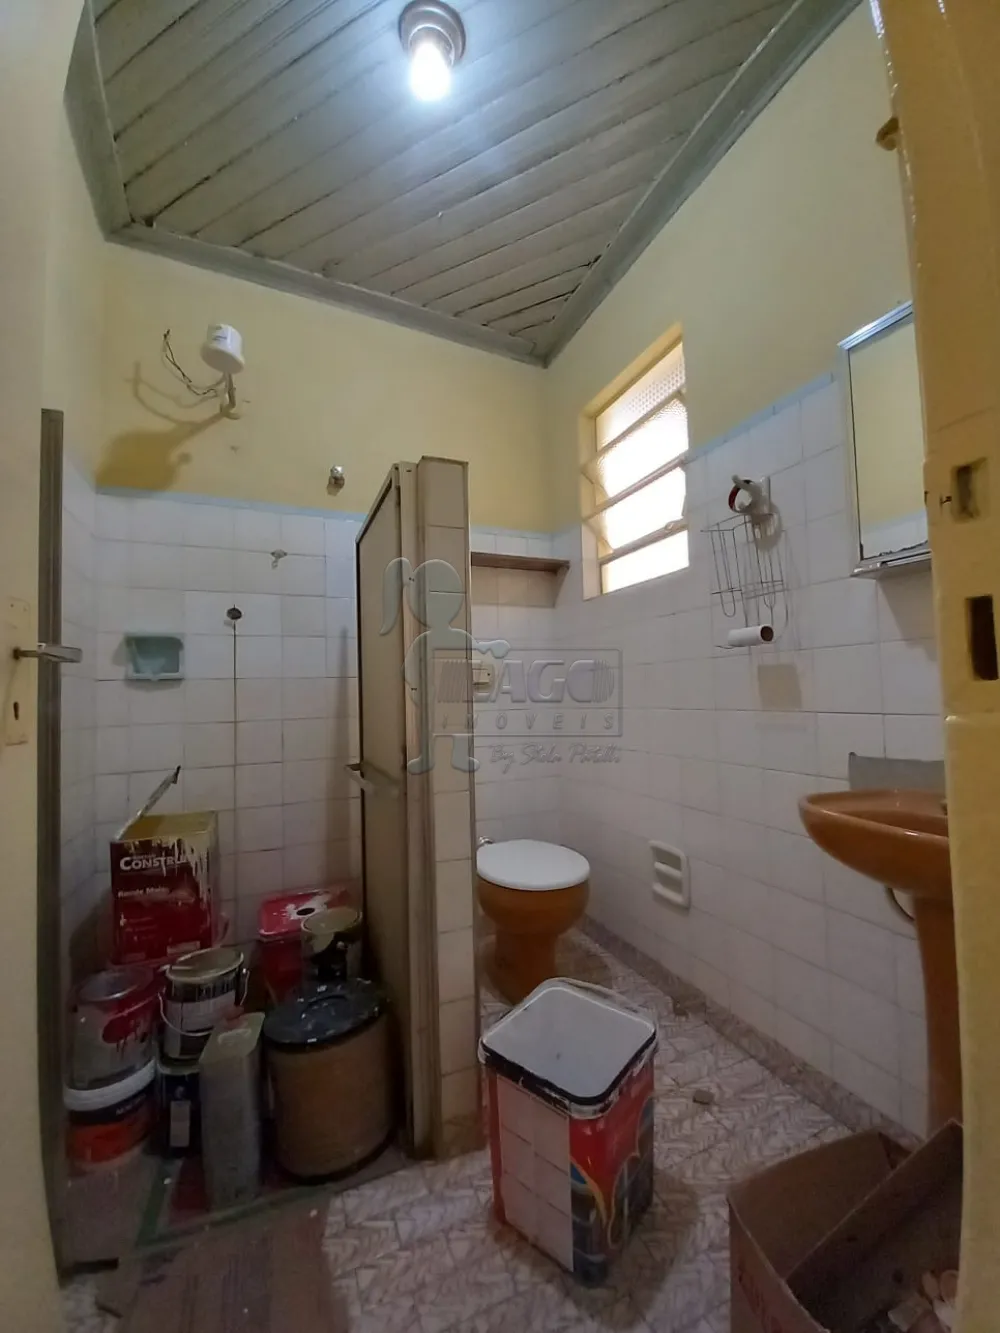 Comprar Casas / Padrão em Ribeirão Preto R$ 500.000,00 - Foto 10